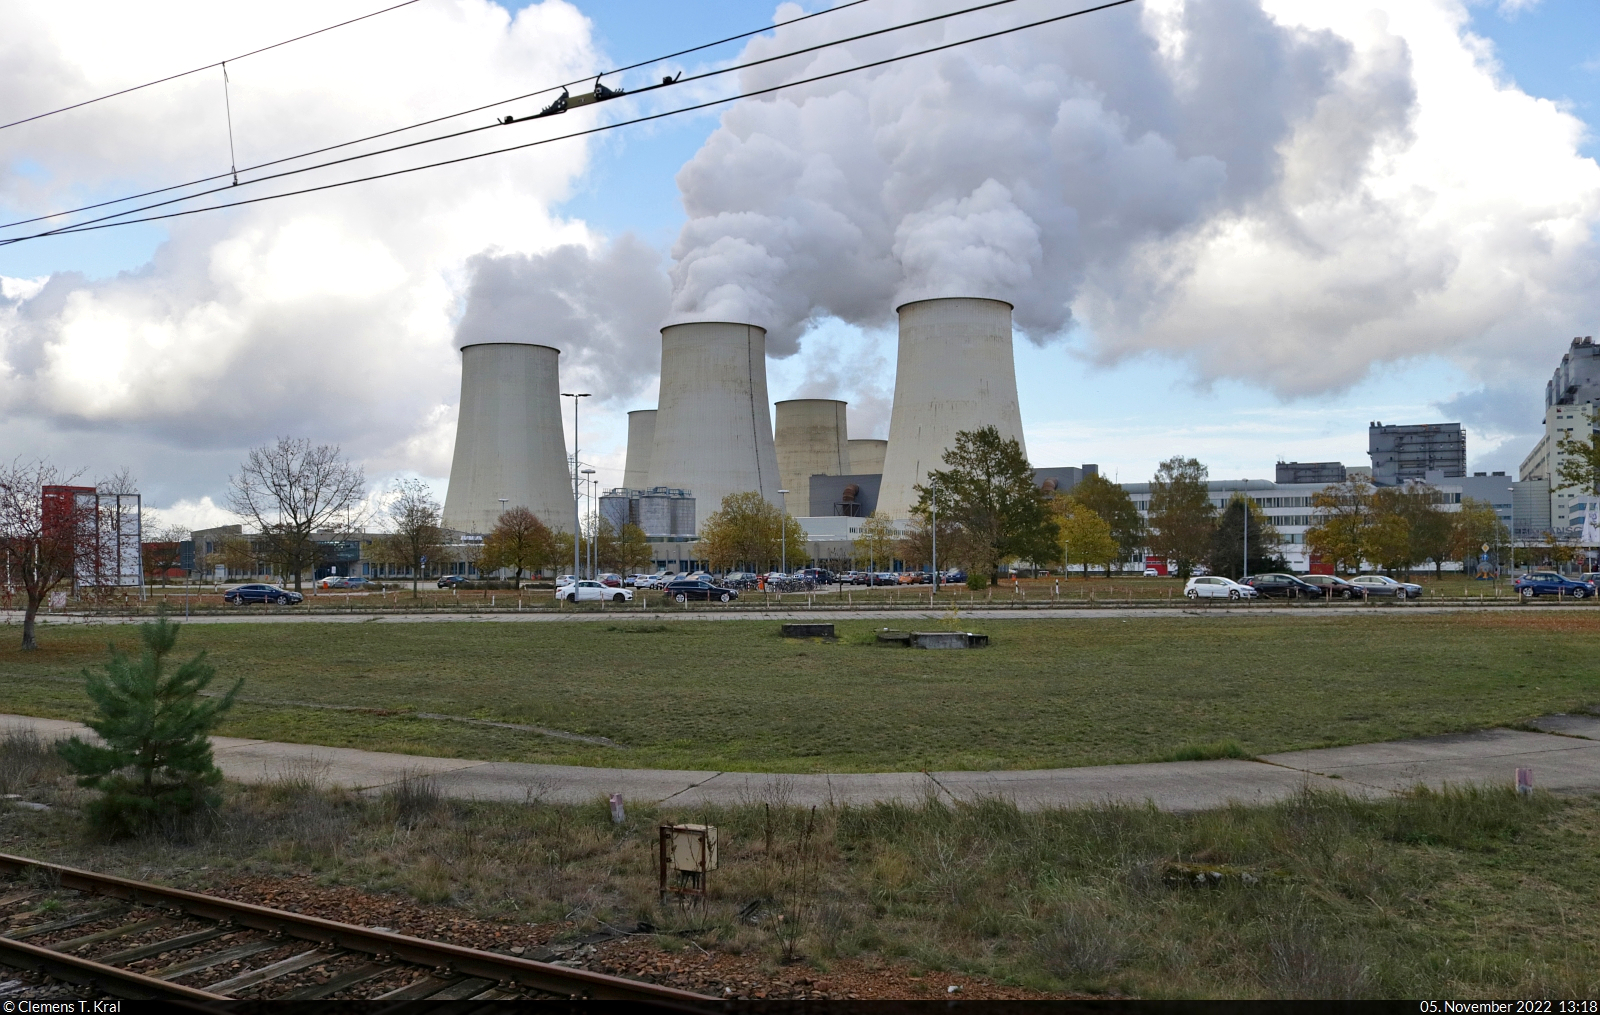 Das Braunkohle-Kraftwerk Jnschwalde im Lausitzer Revier, fotografiert vom Werksbahnhof Peitz Ost.

🕓 5.11.2022 | 13:18 Uhr